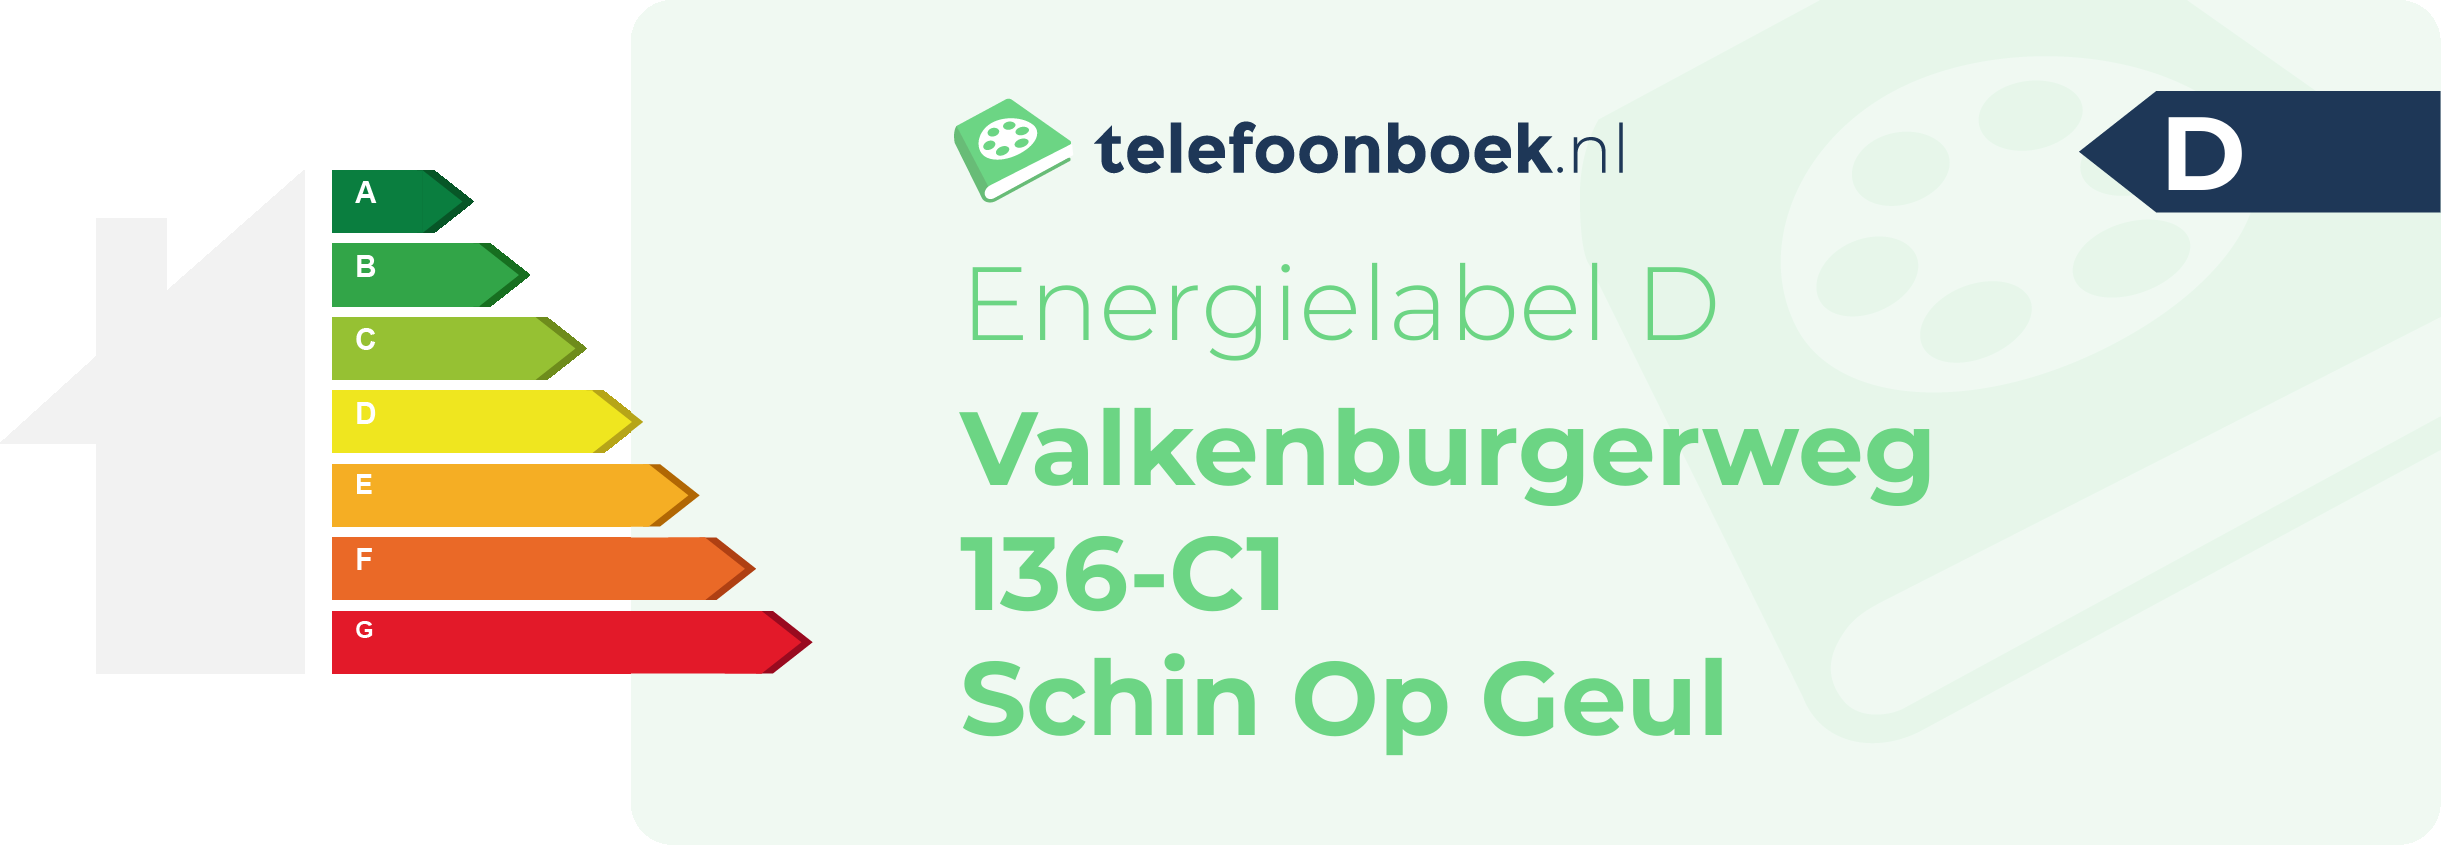 Energielabel Valkenburgerweg 136-C1 Schin Op Geul